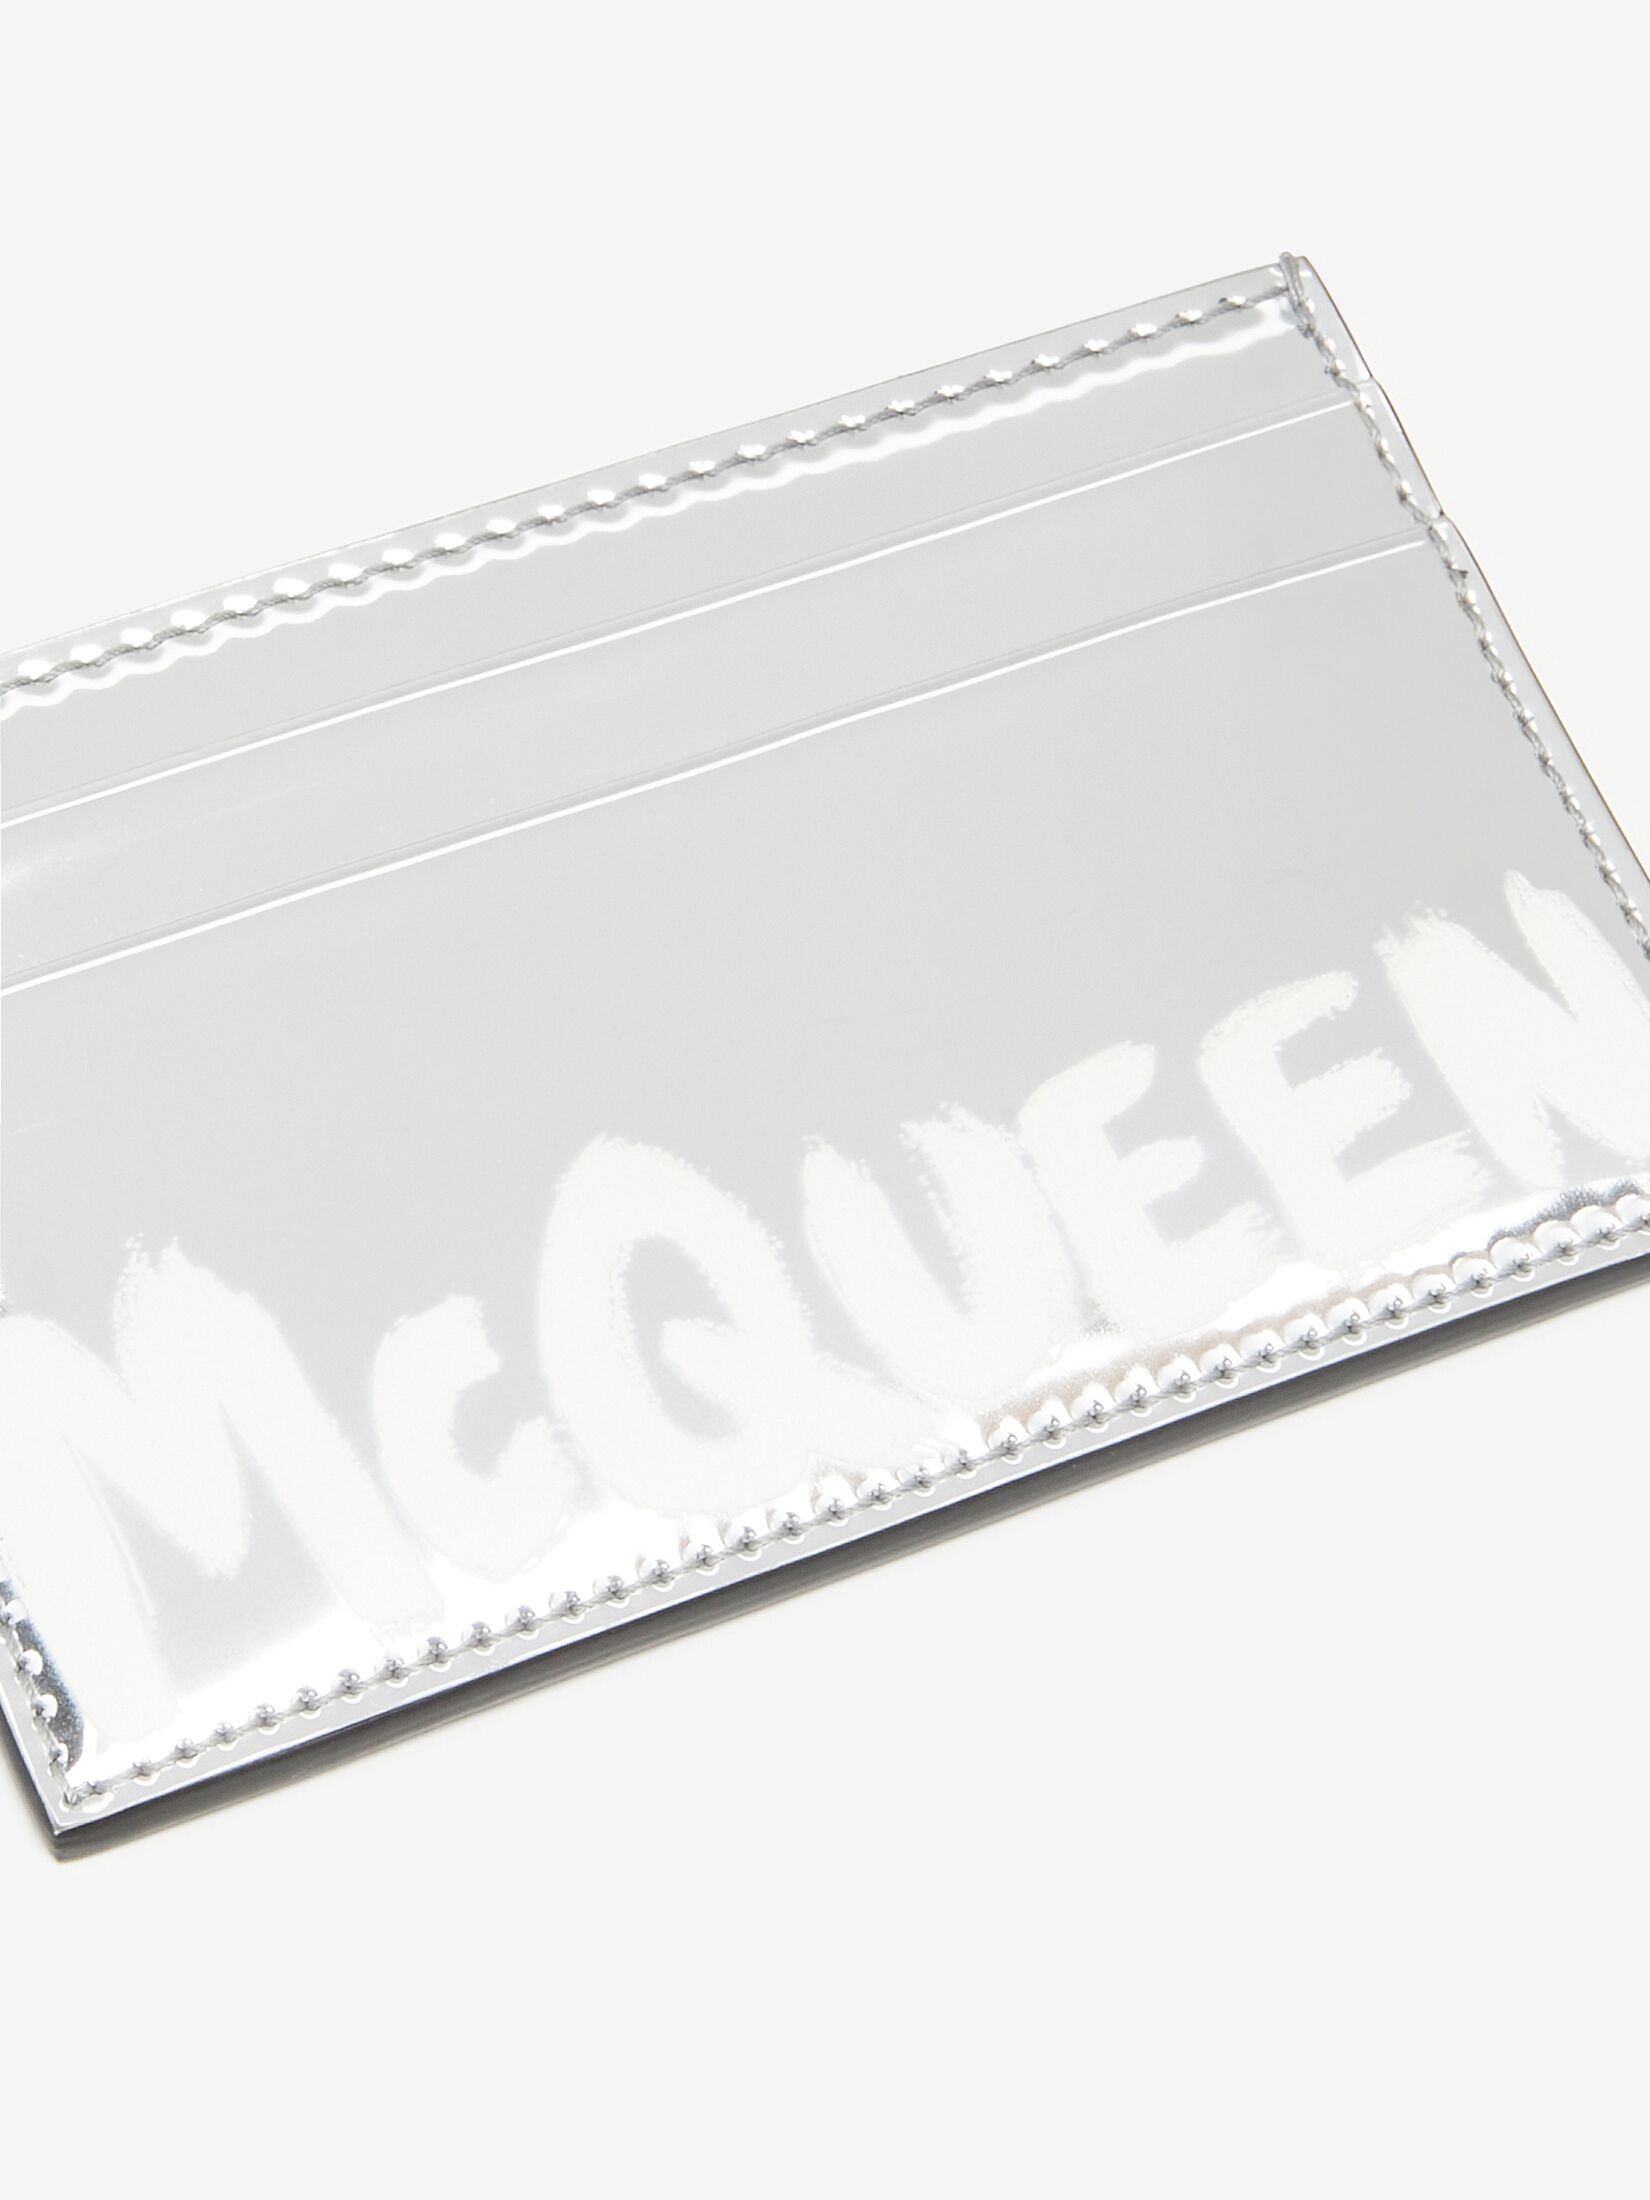 McQueen Graffiti卡片套